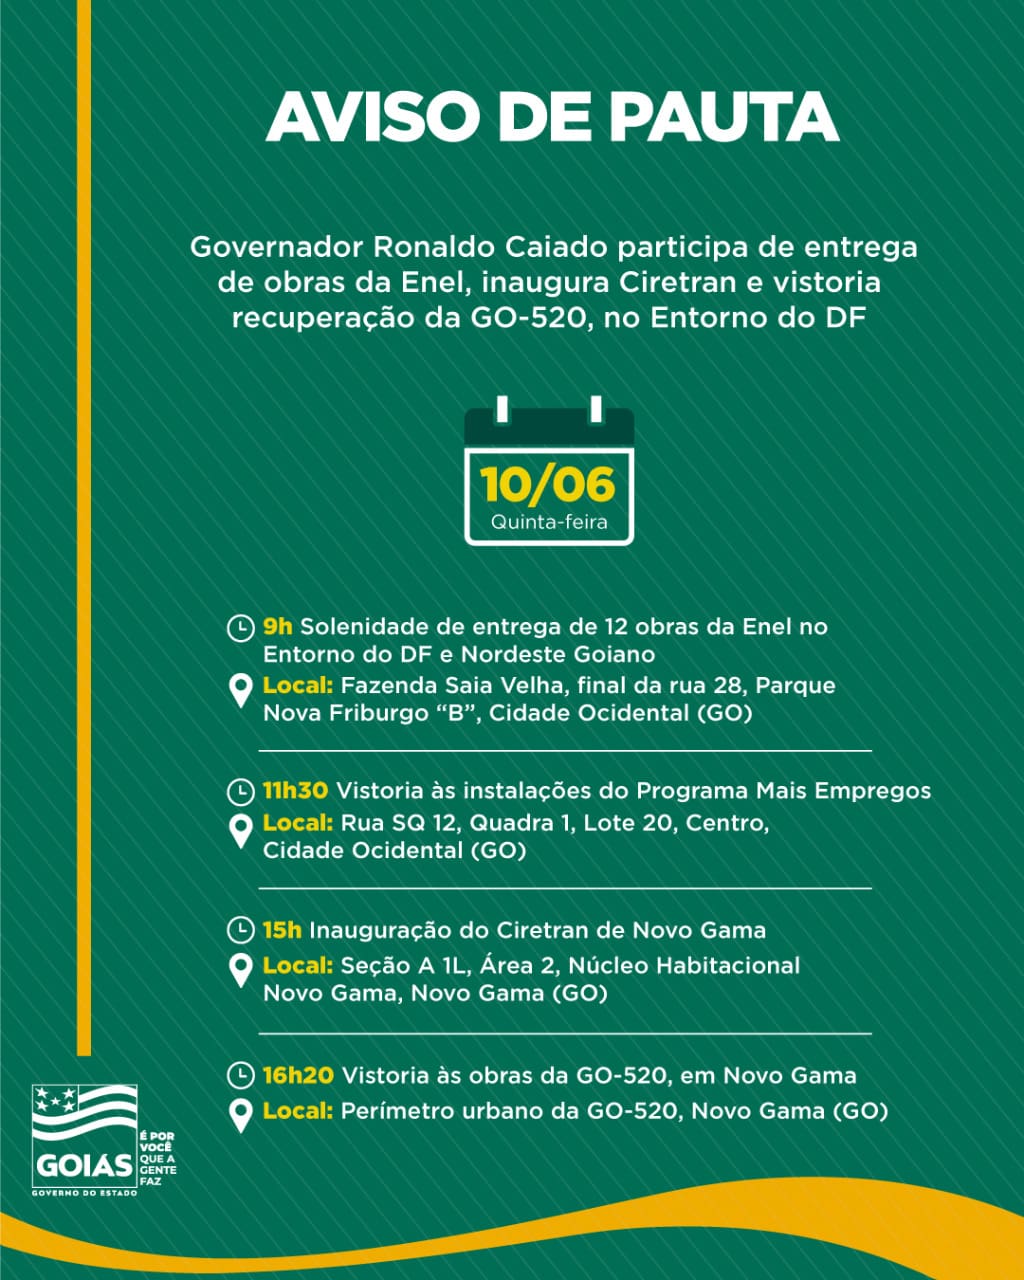 Queremos energia de qualidade”, diz governador sobre a venda da Enel Goiás  - Agência Cora Coralina de Notícias